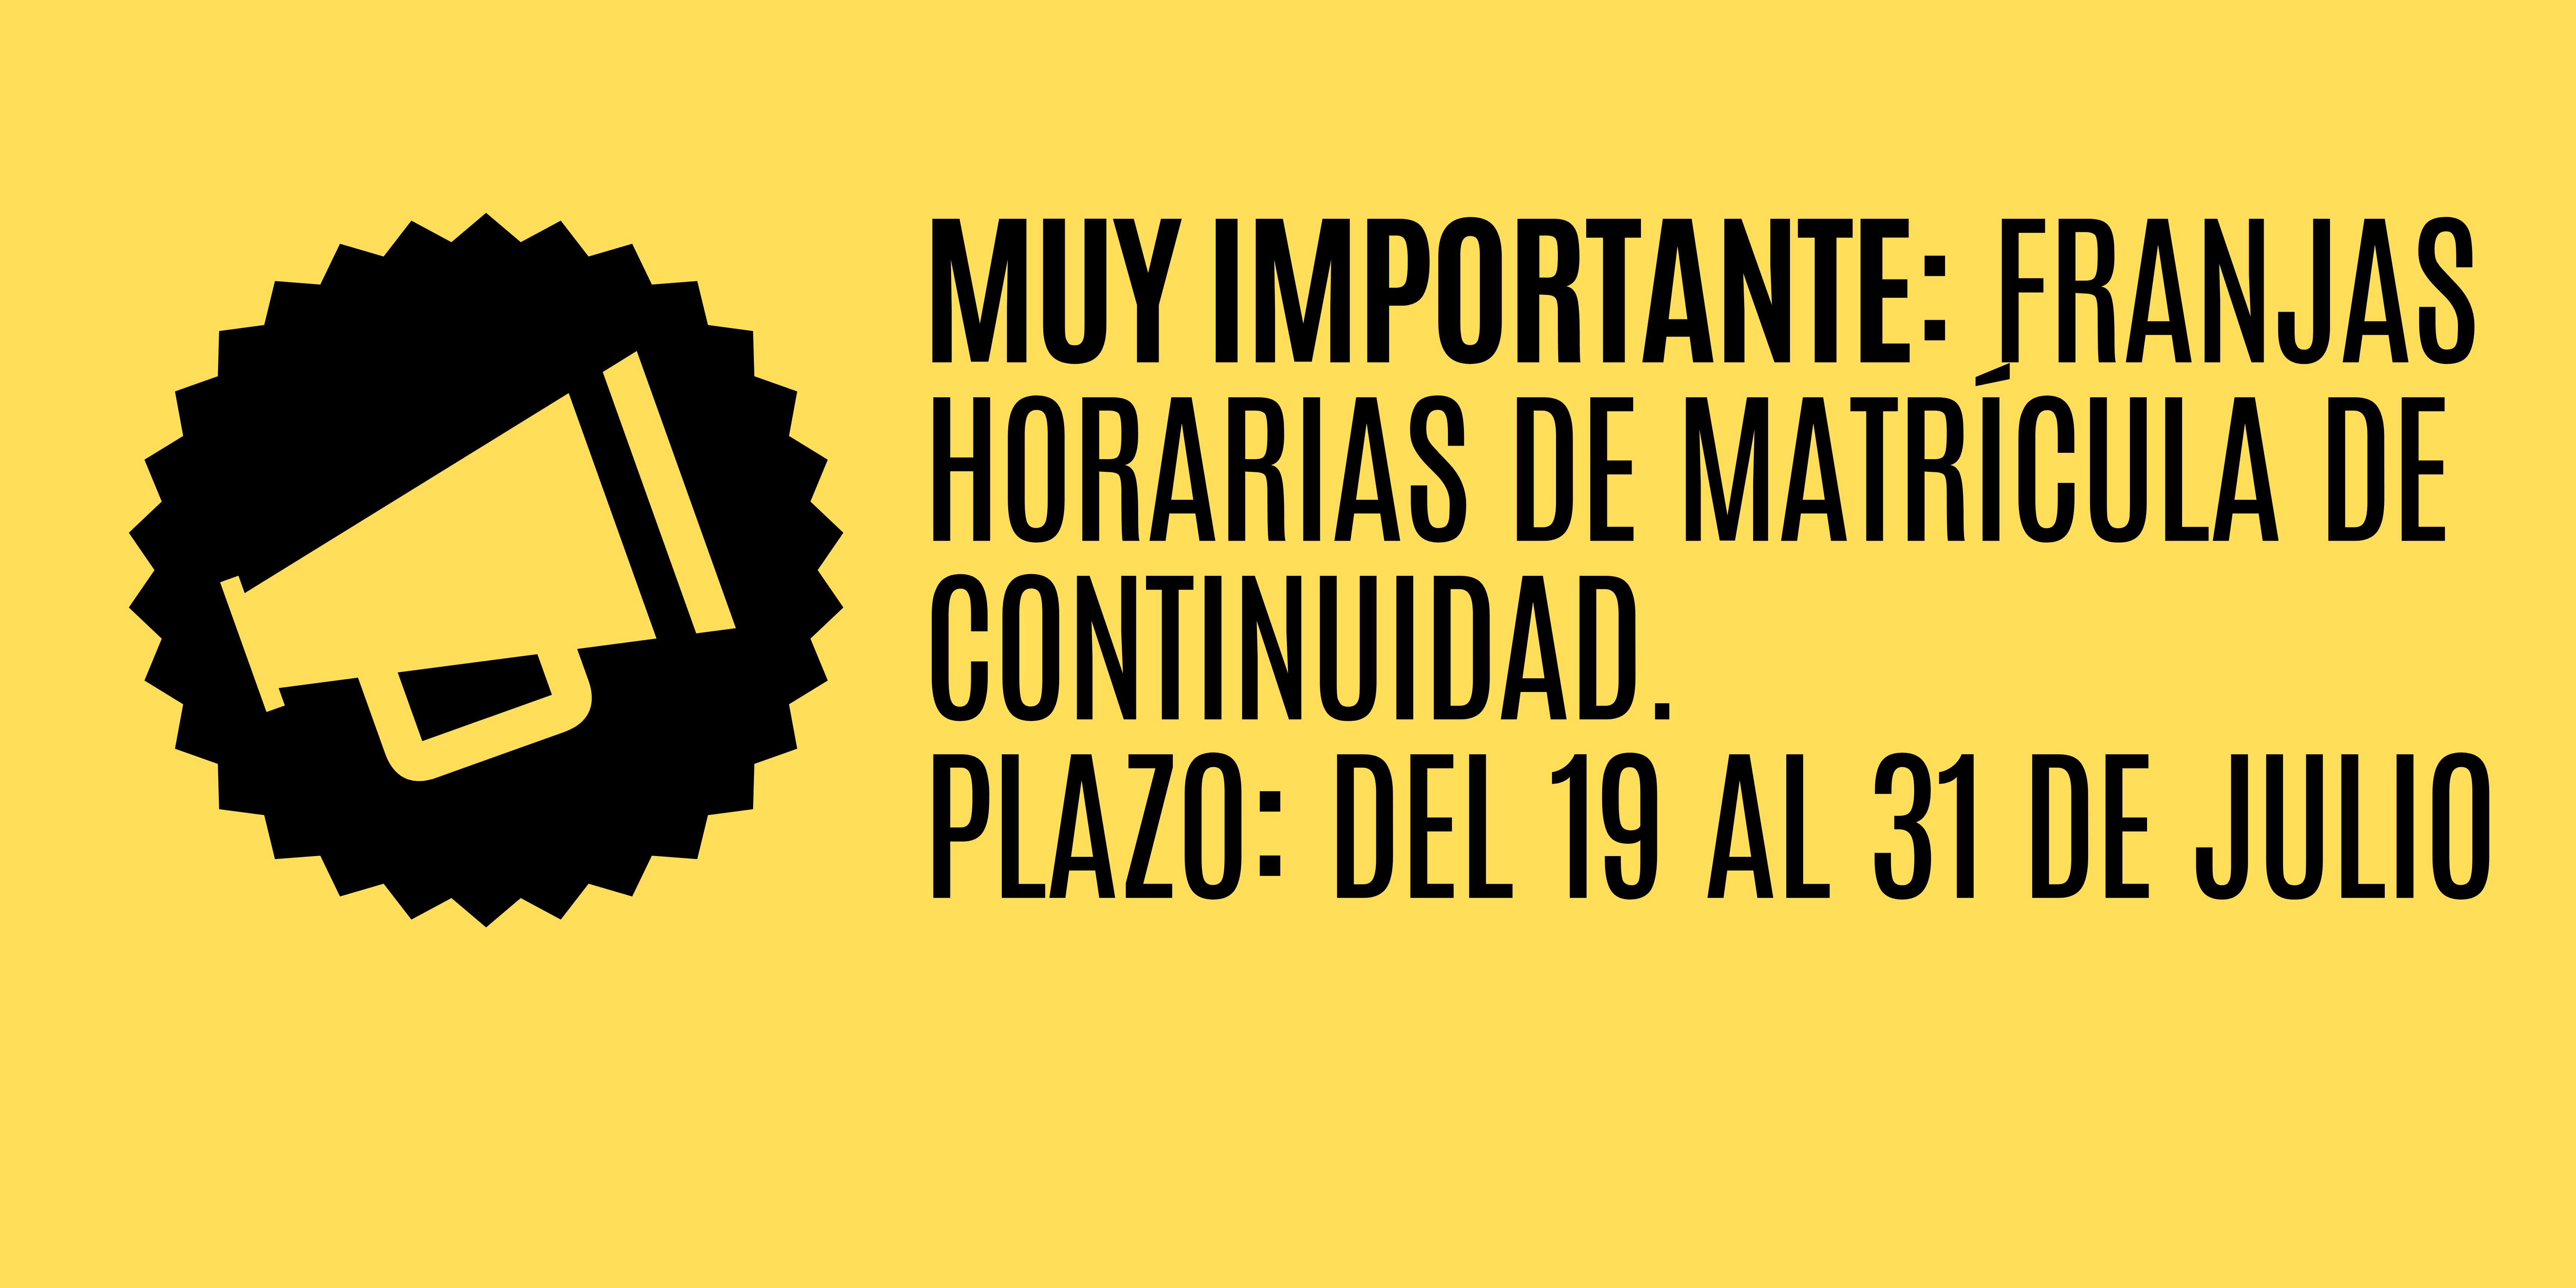 ¡¡¡MUY IMPORTANTE!!!: FRANJAS HORARIAS DE MATRÍCULA DE CONTINUIDAD. DEL 19 AL 31 DE JULIO.